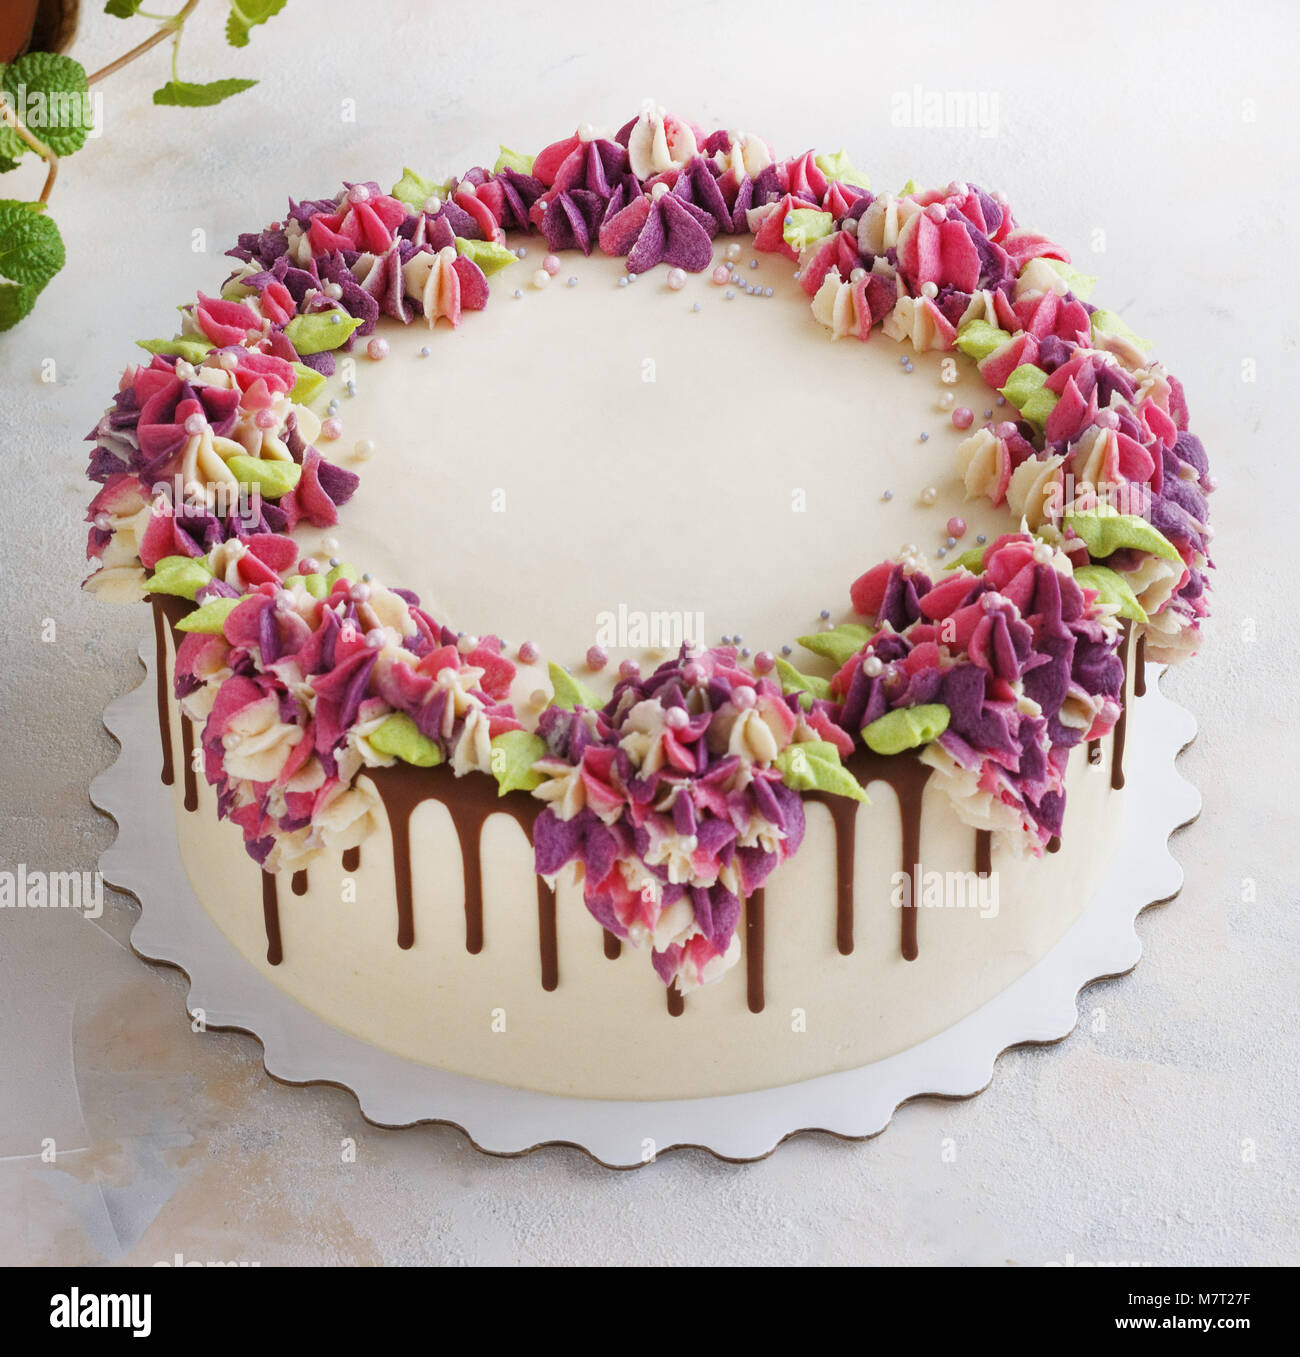 Festosa torta con crema di hydrangea fiori su uno sfondo luminoso Foto Stock